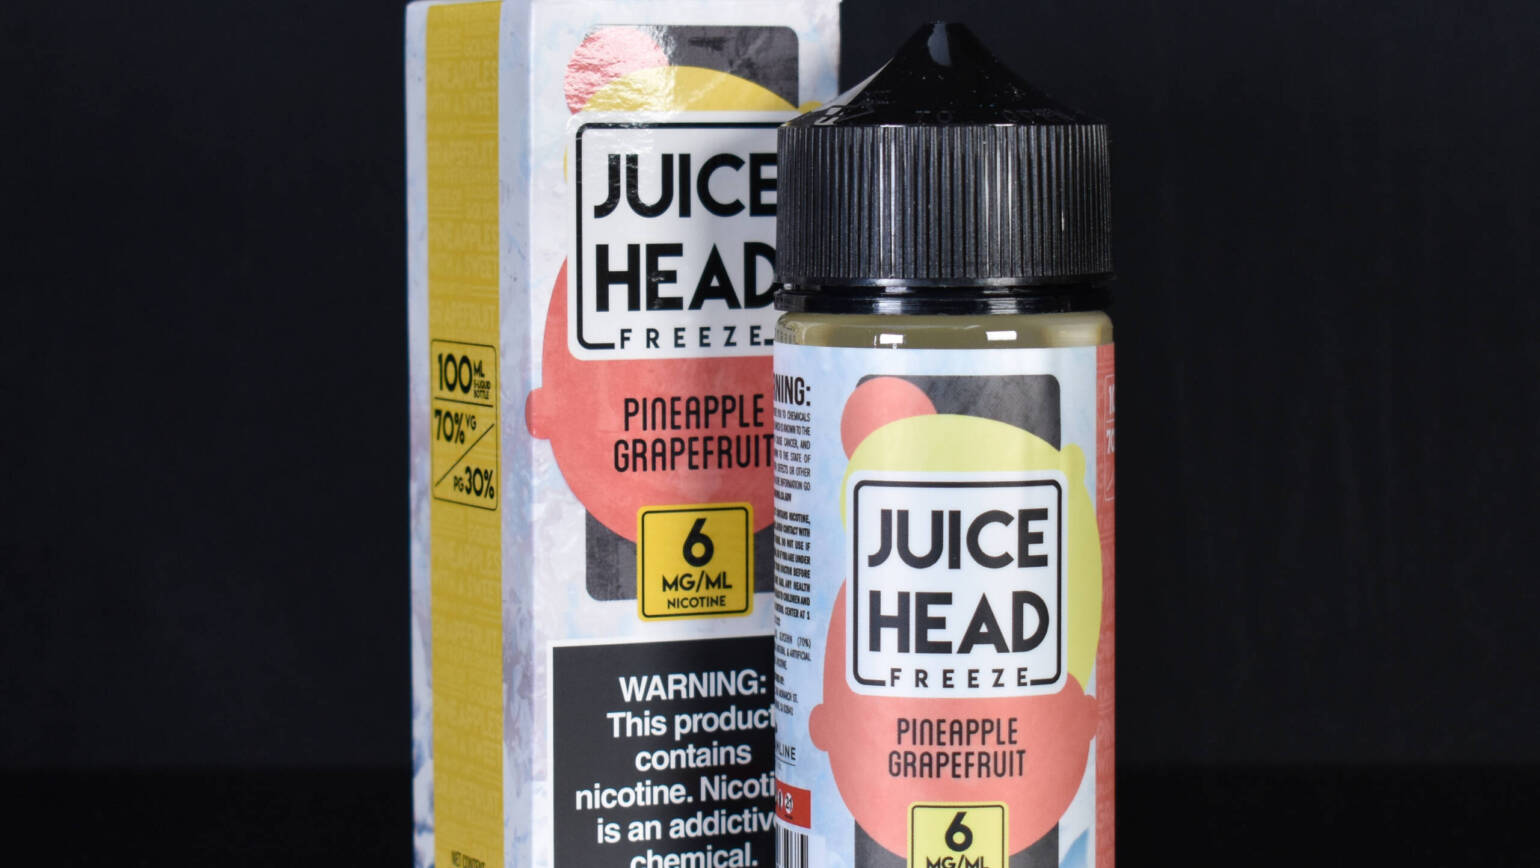 Juice Head – Pineapple Grapefruit FREEZE